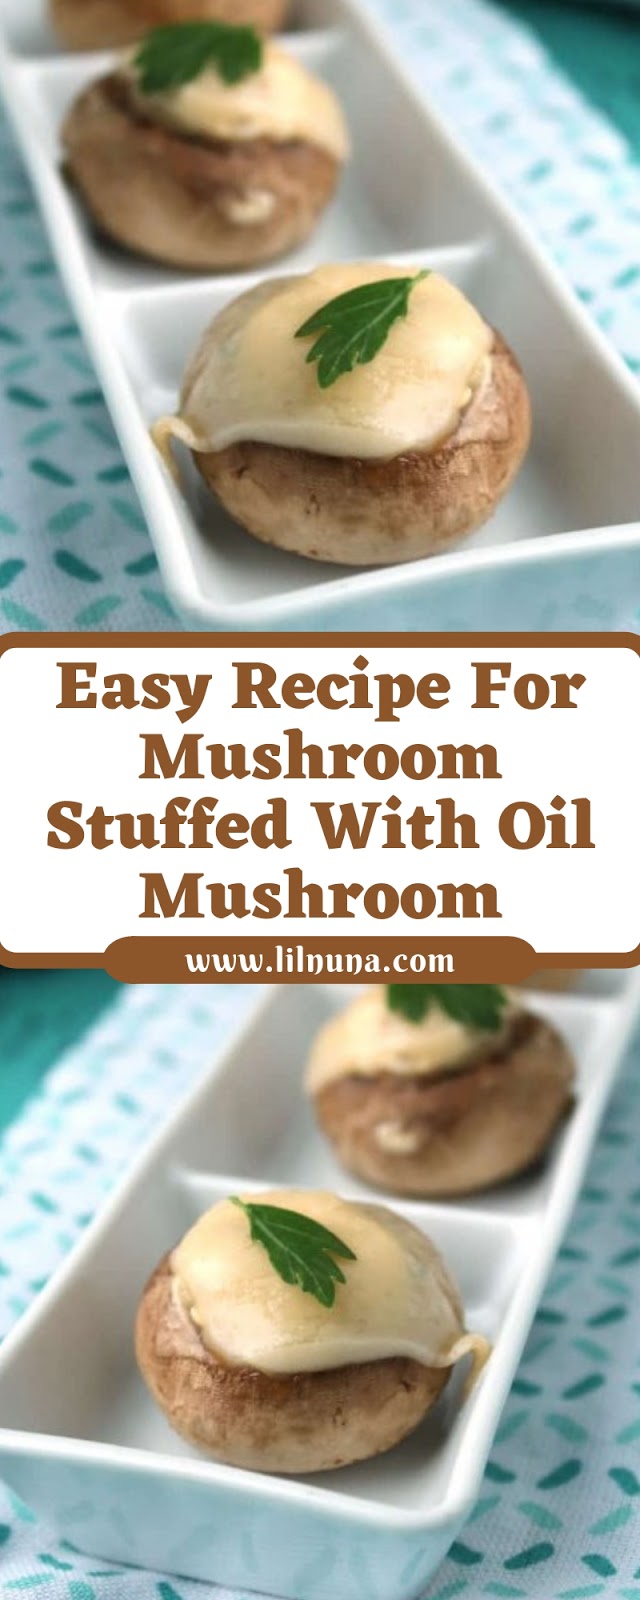 Easy Recipe For Mushroom Stuffed With Oil Mushroom